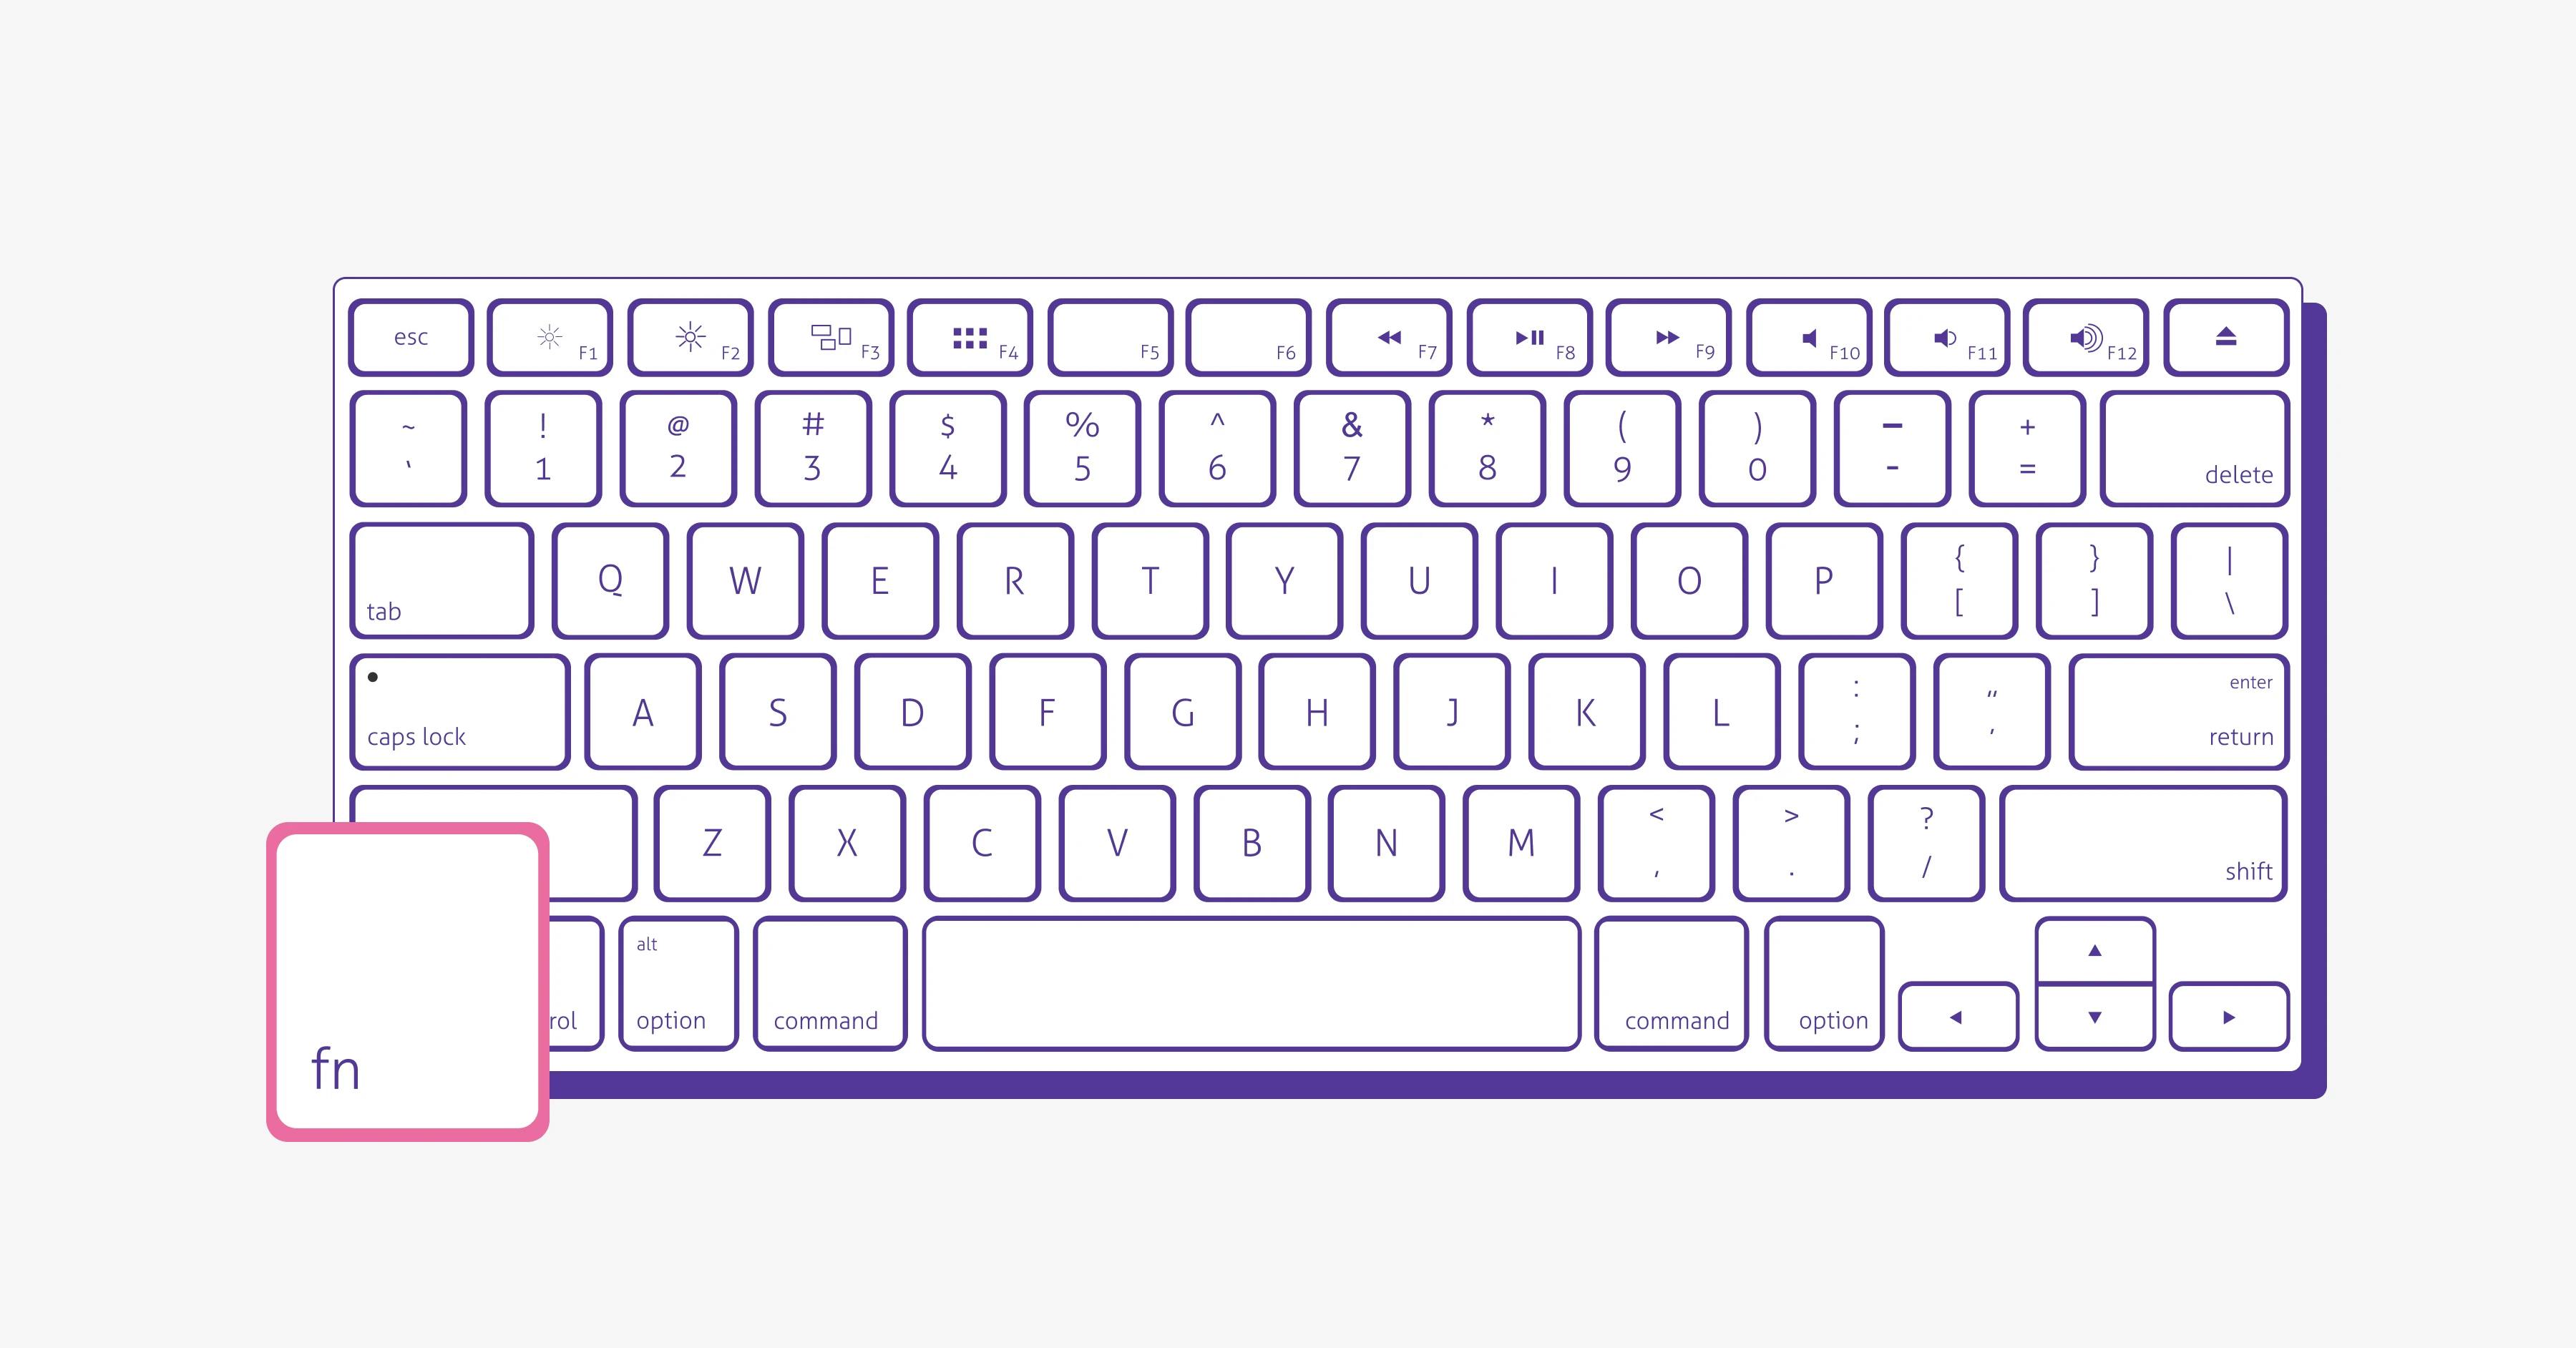 FN key in keyboard